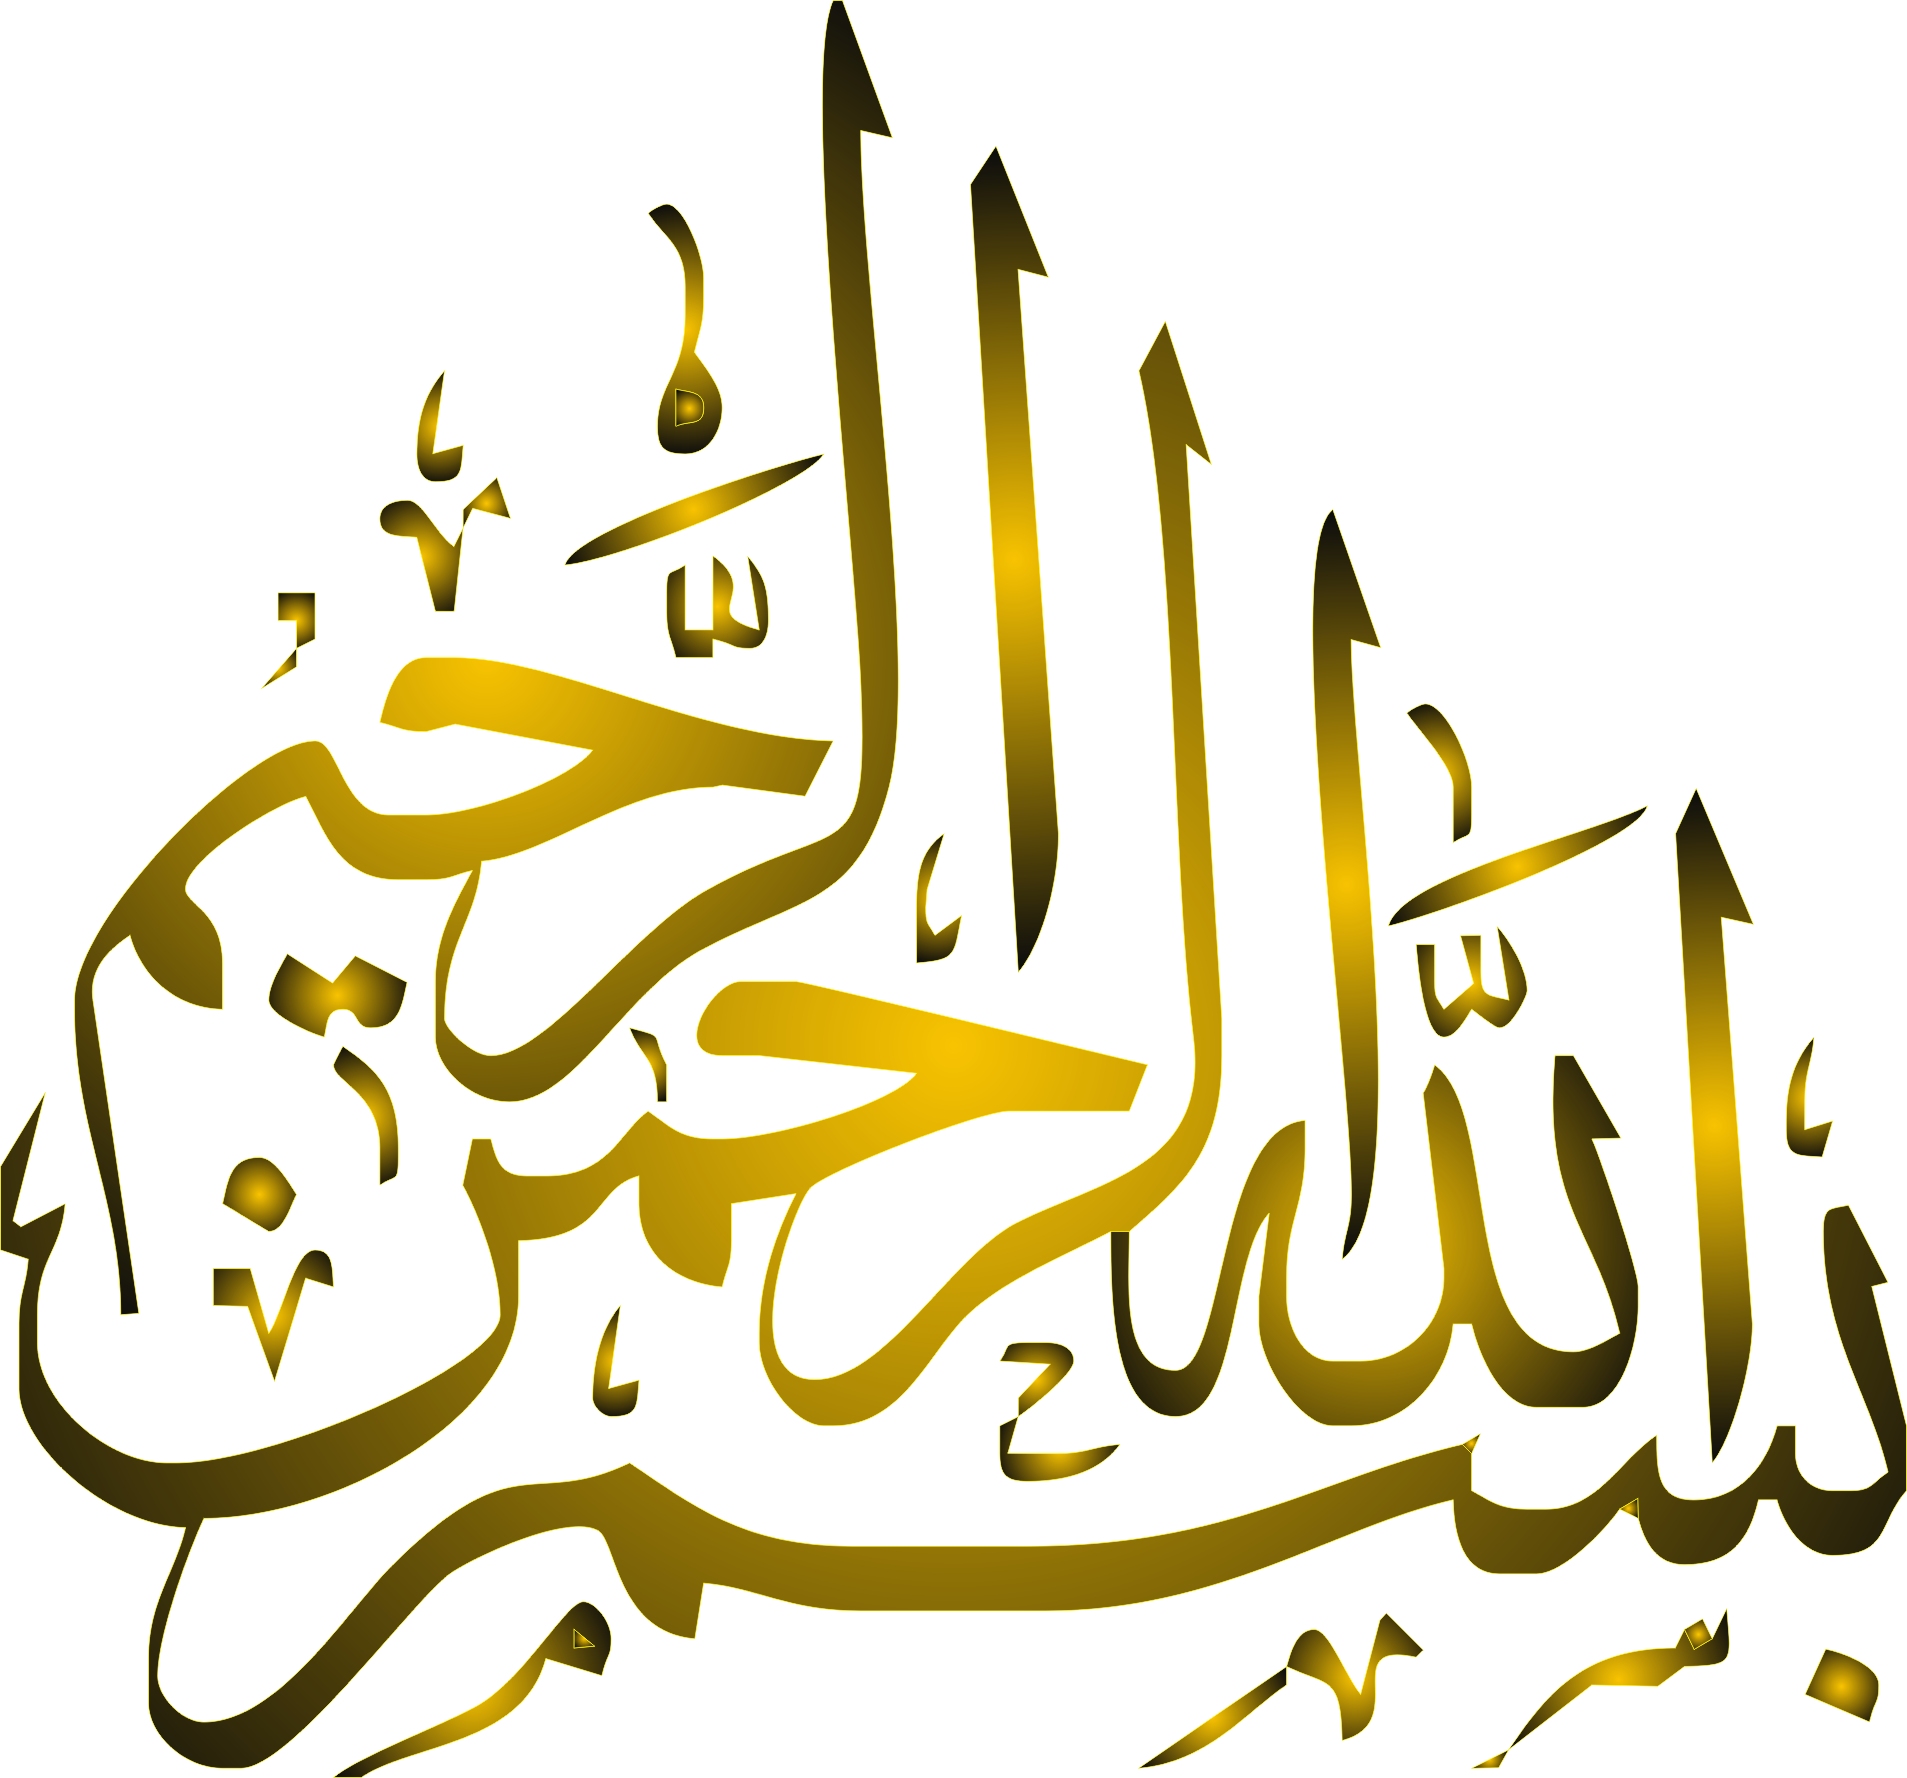 bismillah-logo-png-14